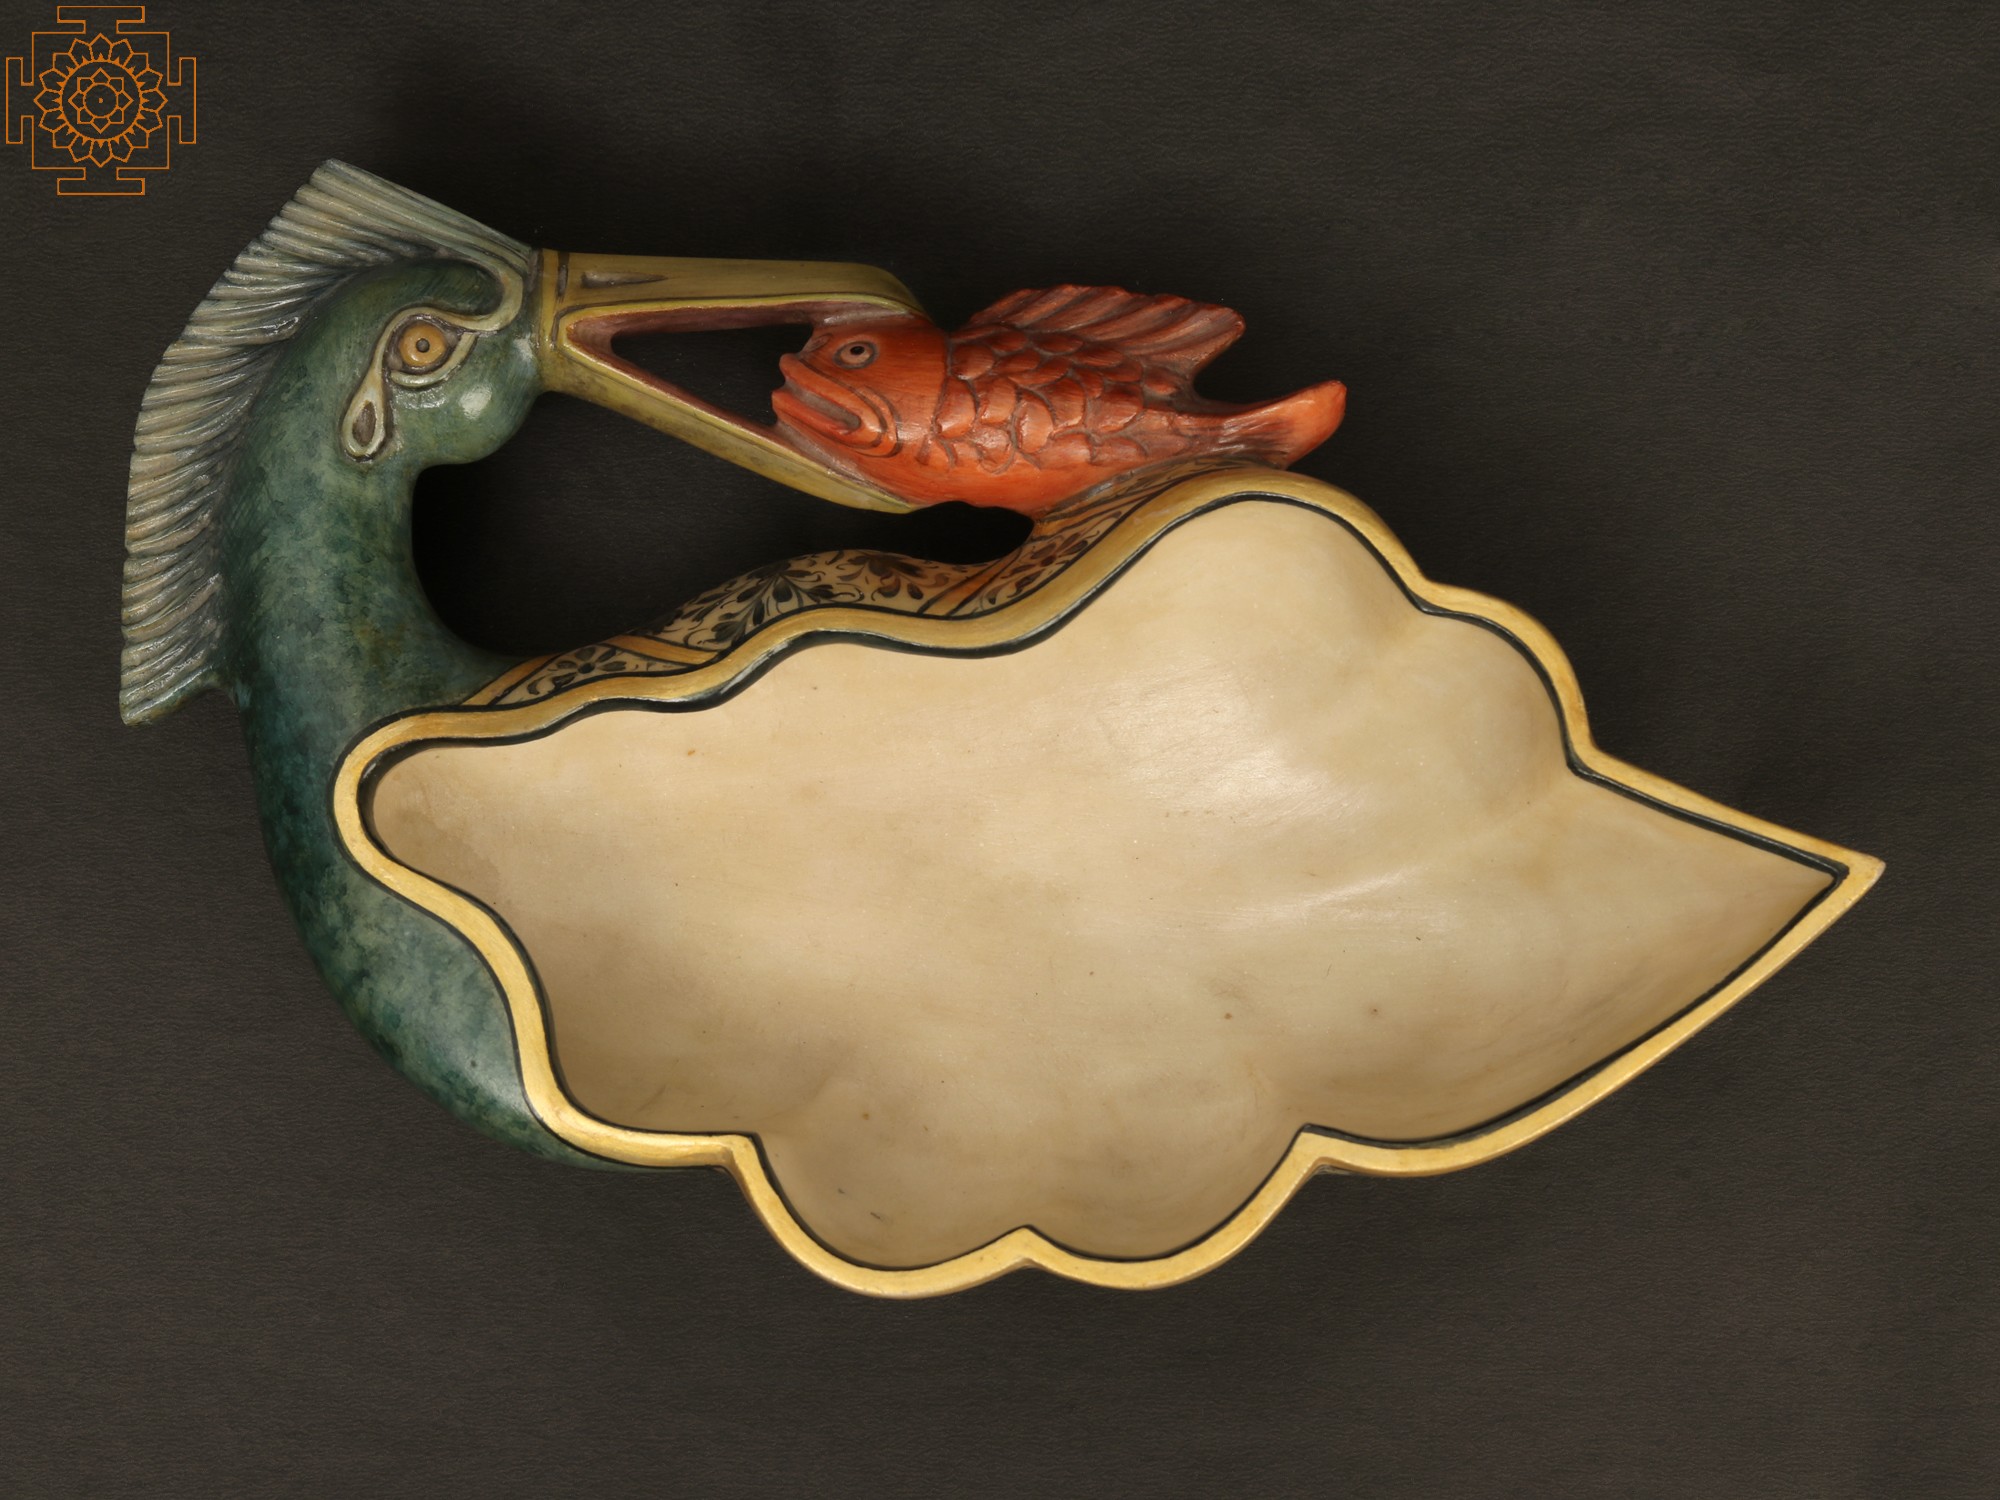 Urli Carved of Exquisite Marble - Crane Catching Fish in his Beak